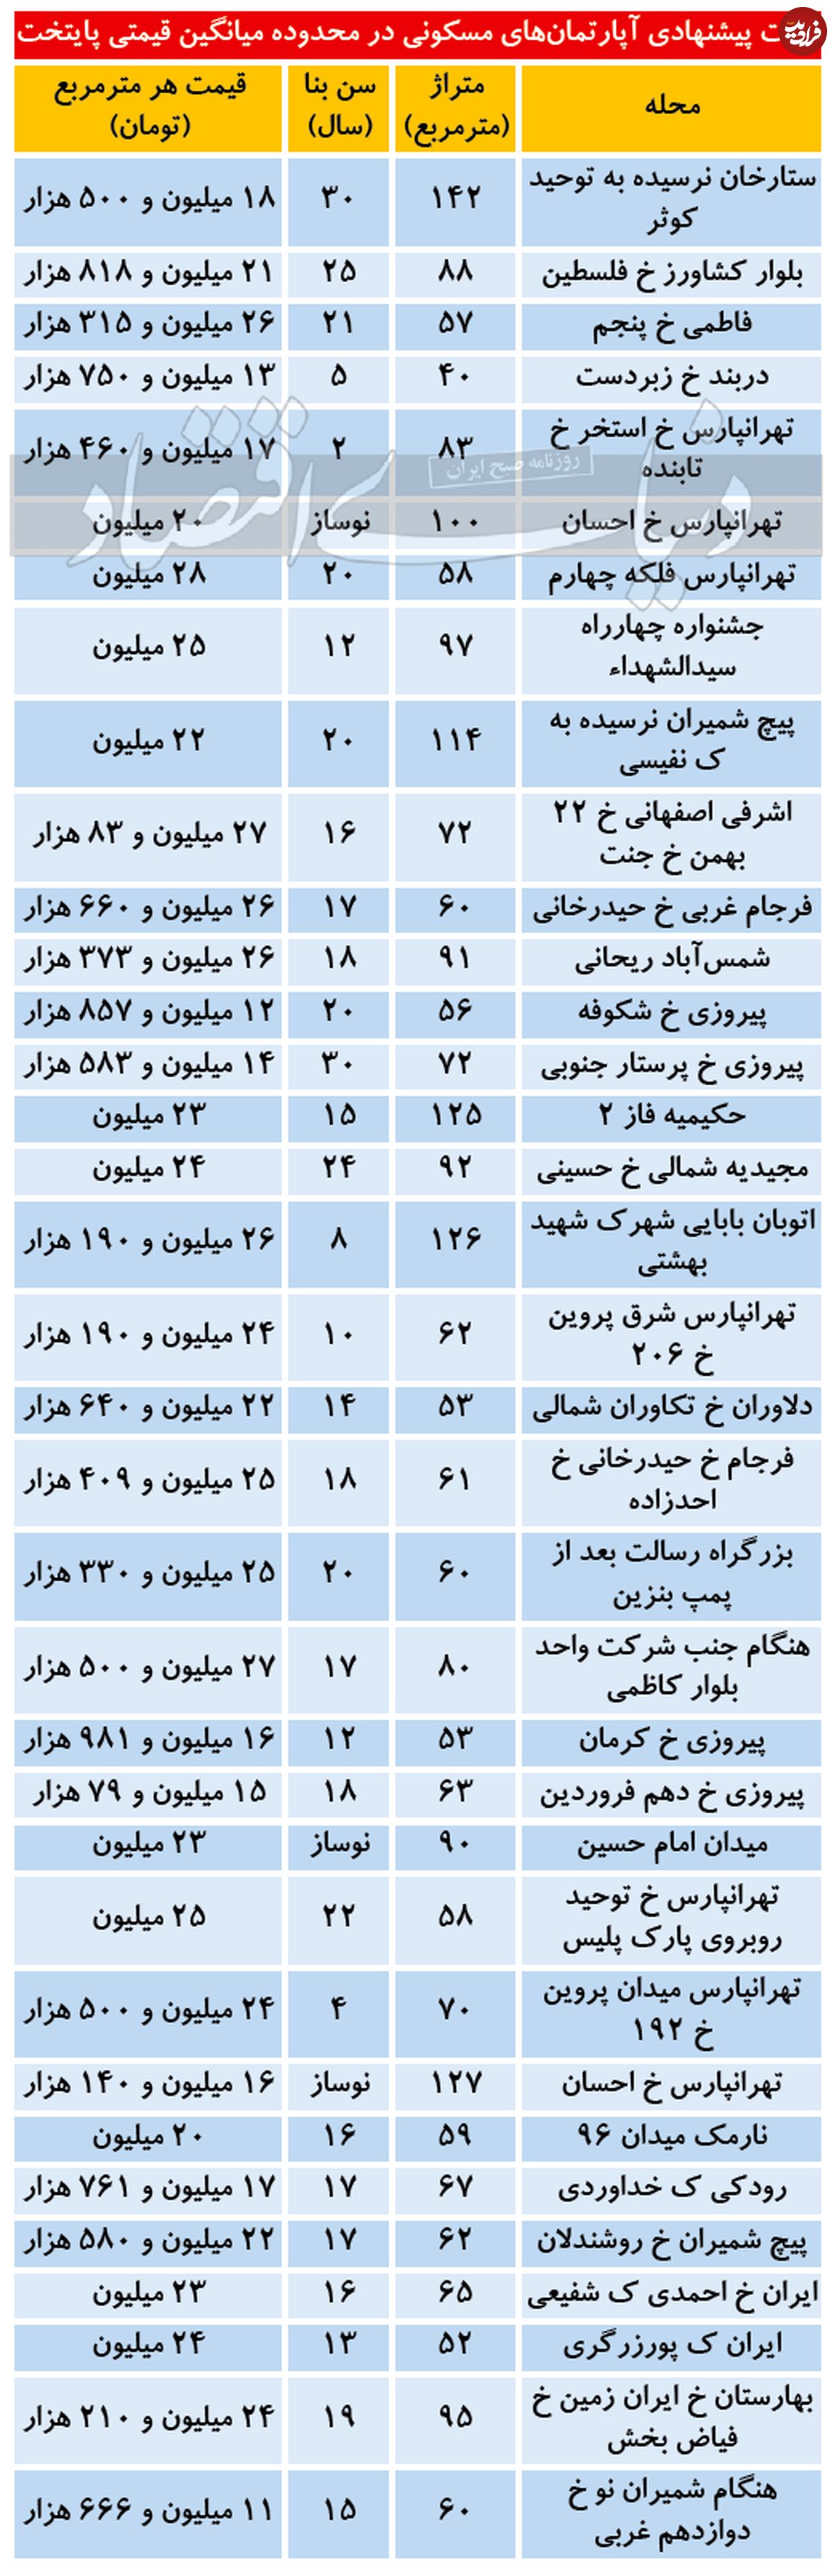 نرخ میانگین قیمتی آپارتمان در تهران